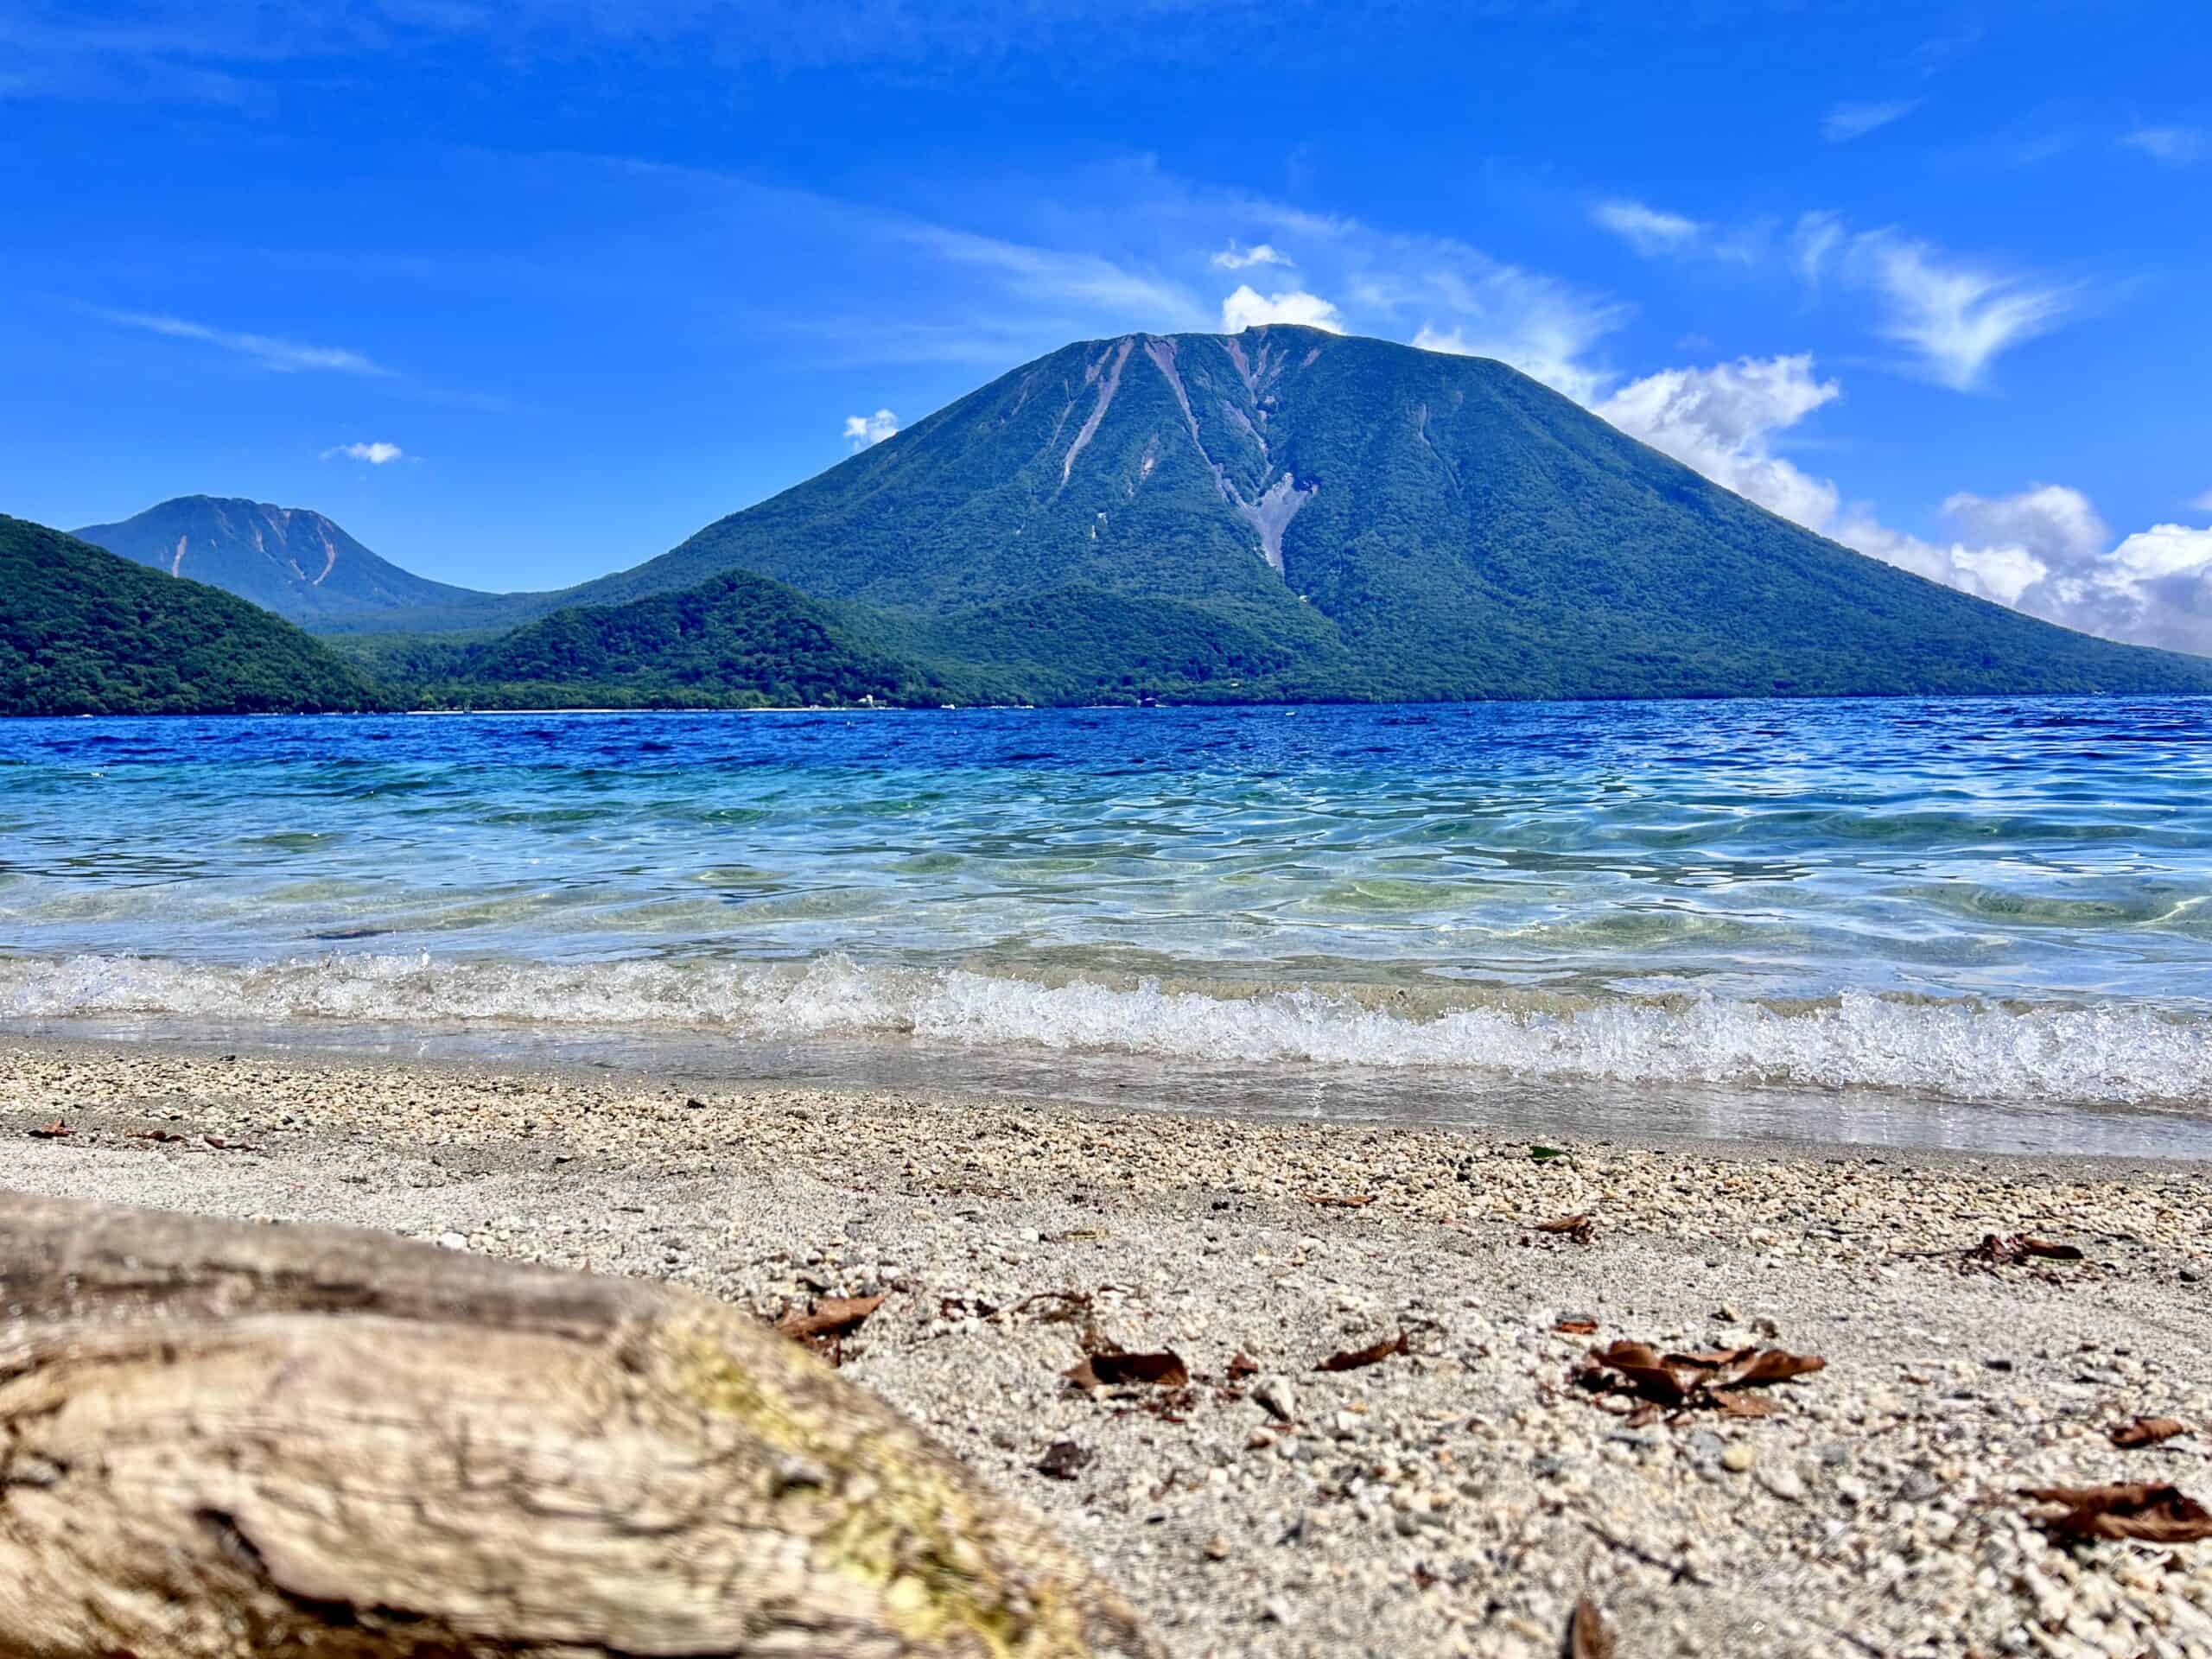 Best things to do in Nikko Japan - Derek Souza - Lake Chuzenji in Nikko